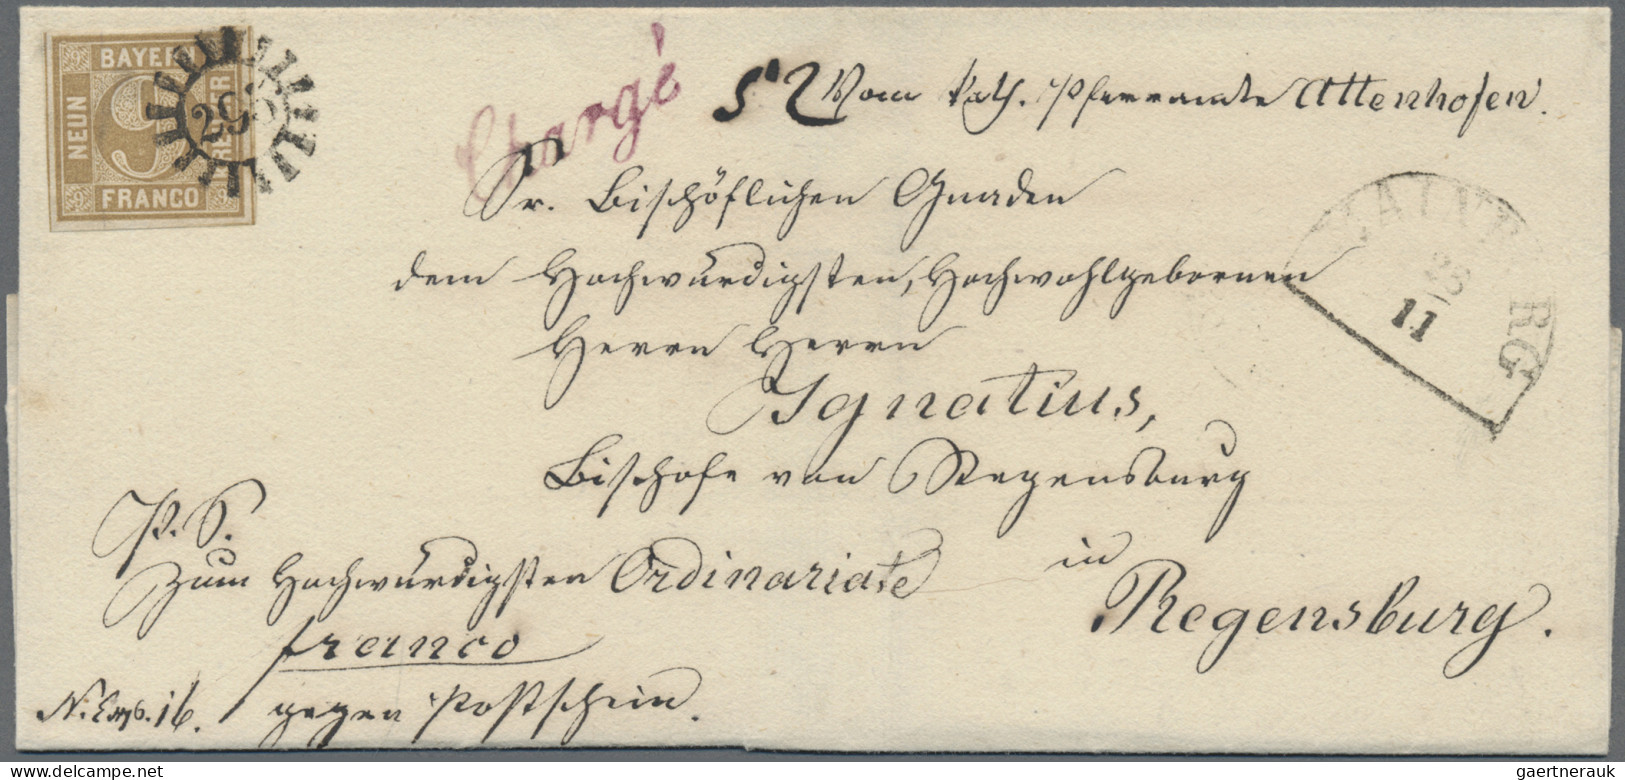 Bayern - Marken Und Briefe: 1862, 9 Kreuzer Ockerbraun, Entwertet Mit Geschlosse - Andere & Zonder Classificatie